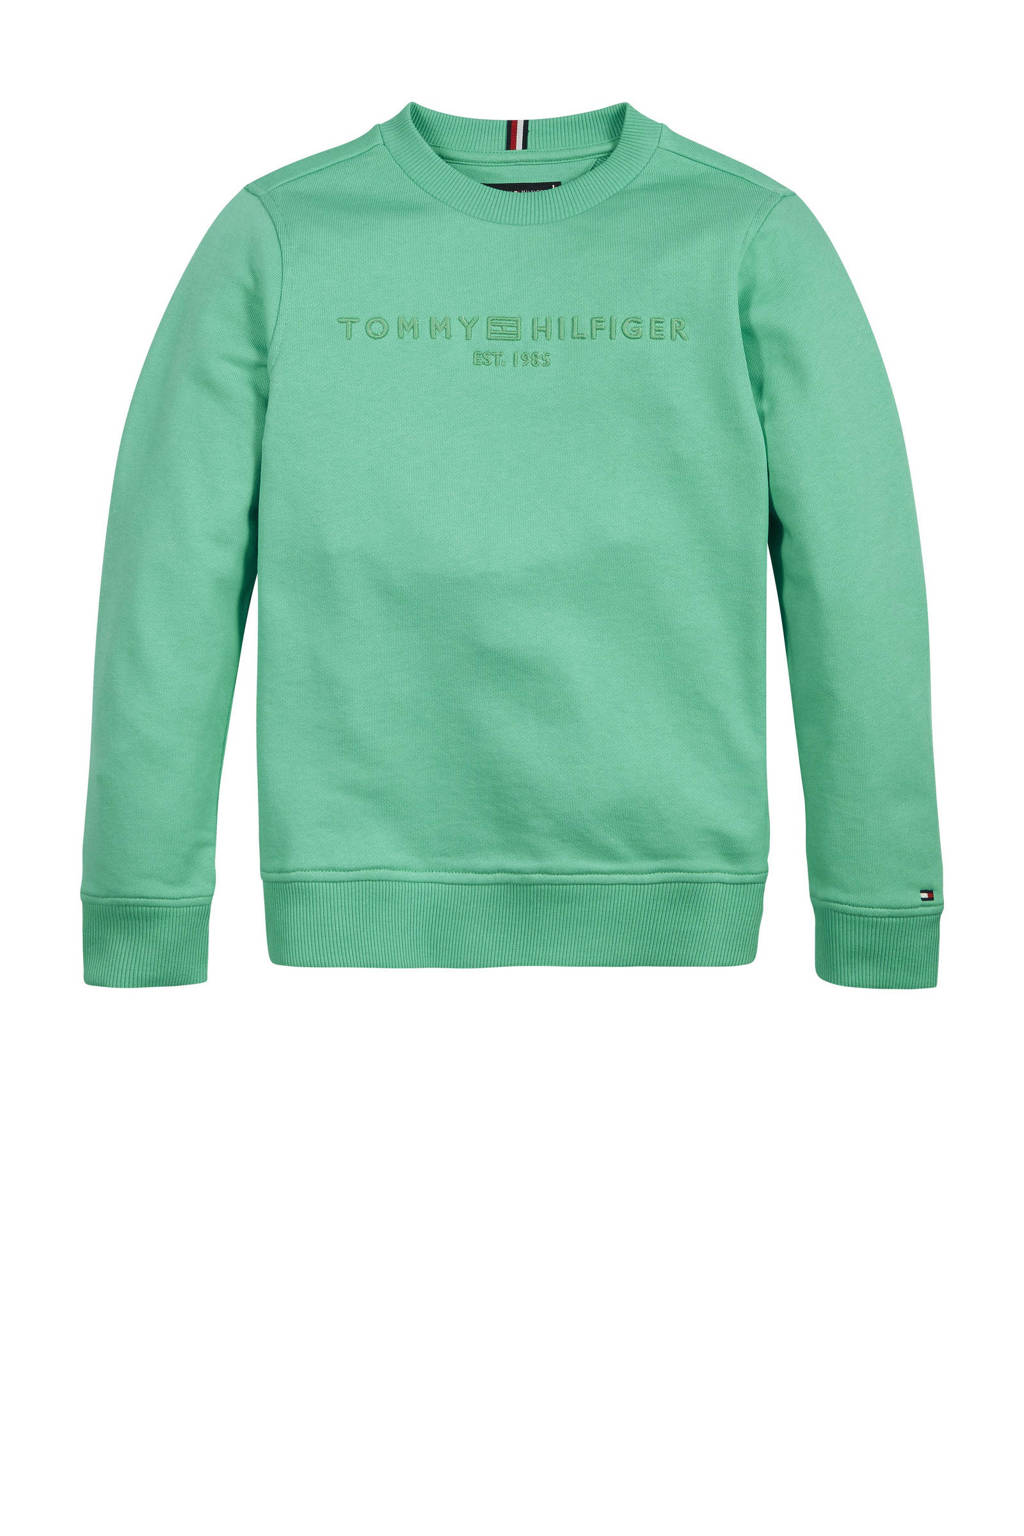 Groene jongens Tommy Hilfiger sweater van biologisch katoen met lange mouwen, ronde hals, elastische tailleband en geribde boorden